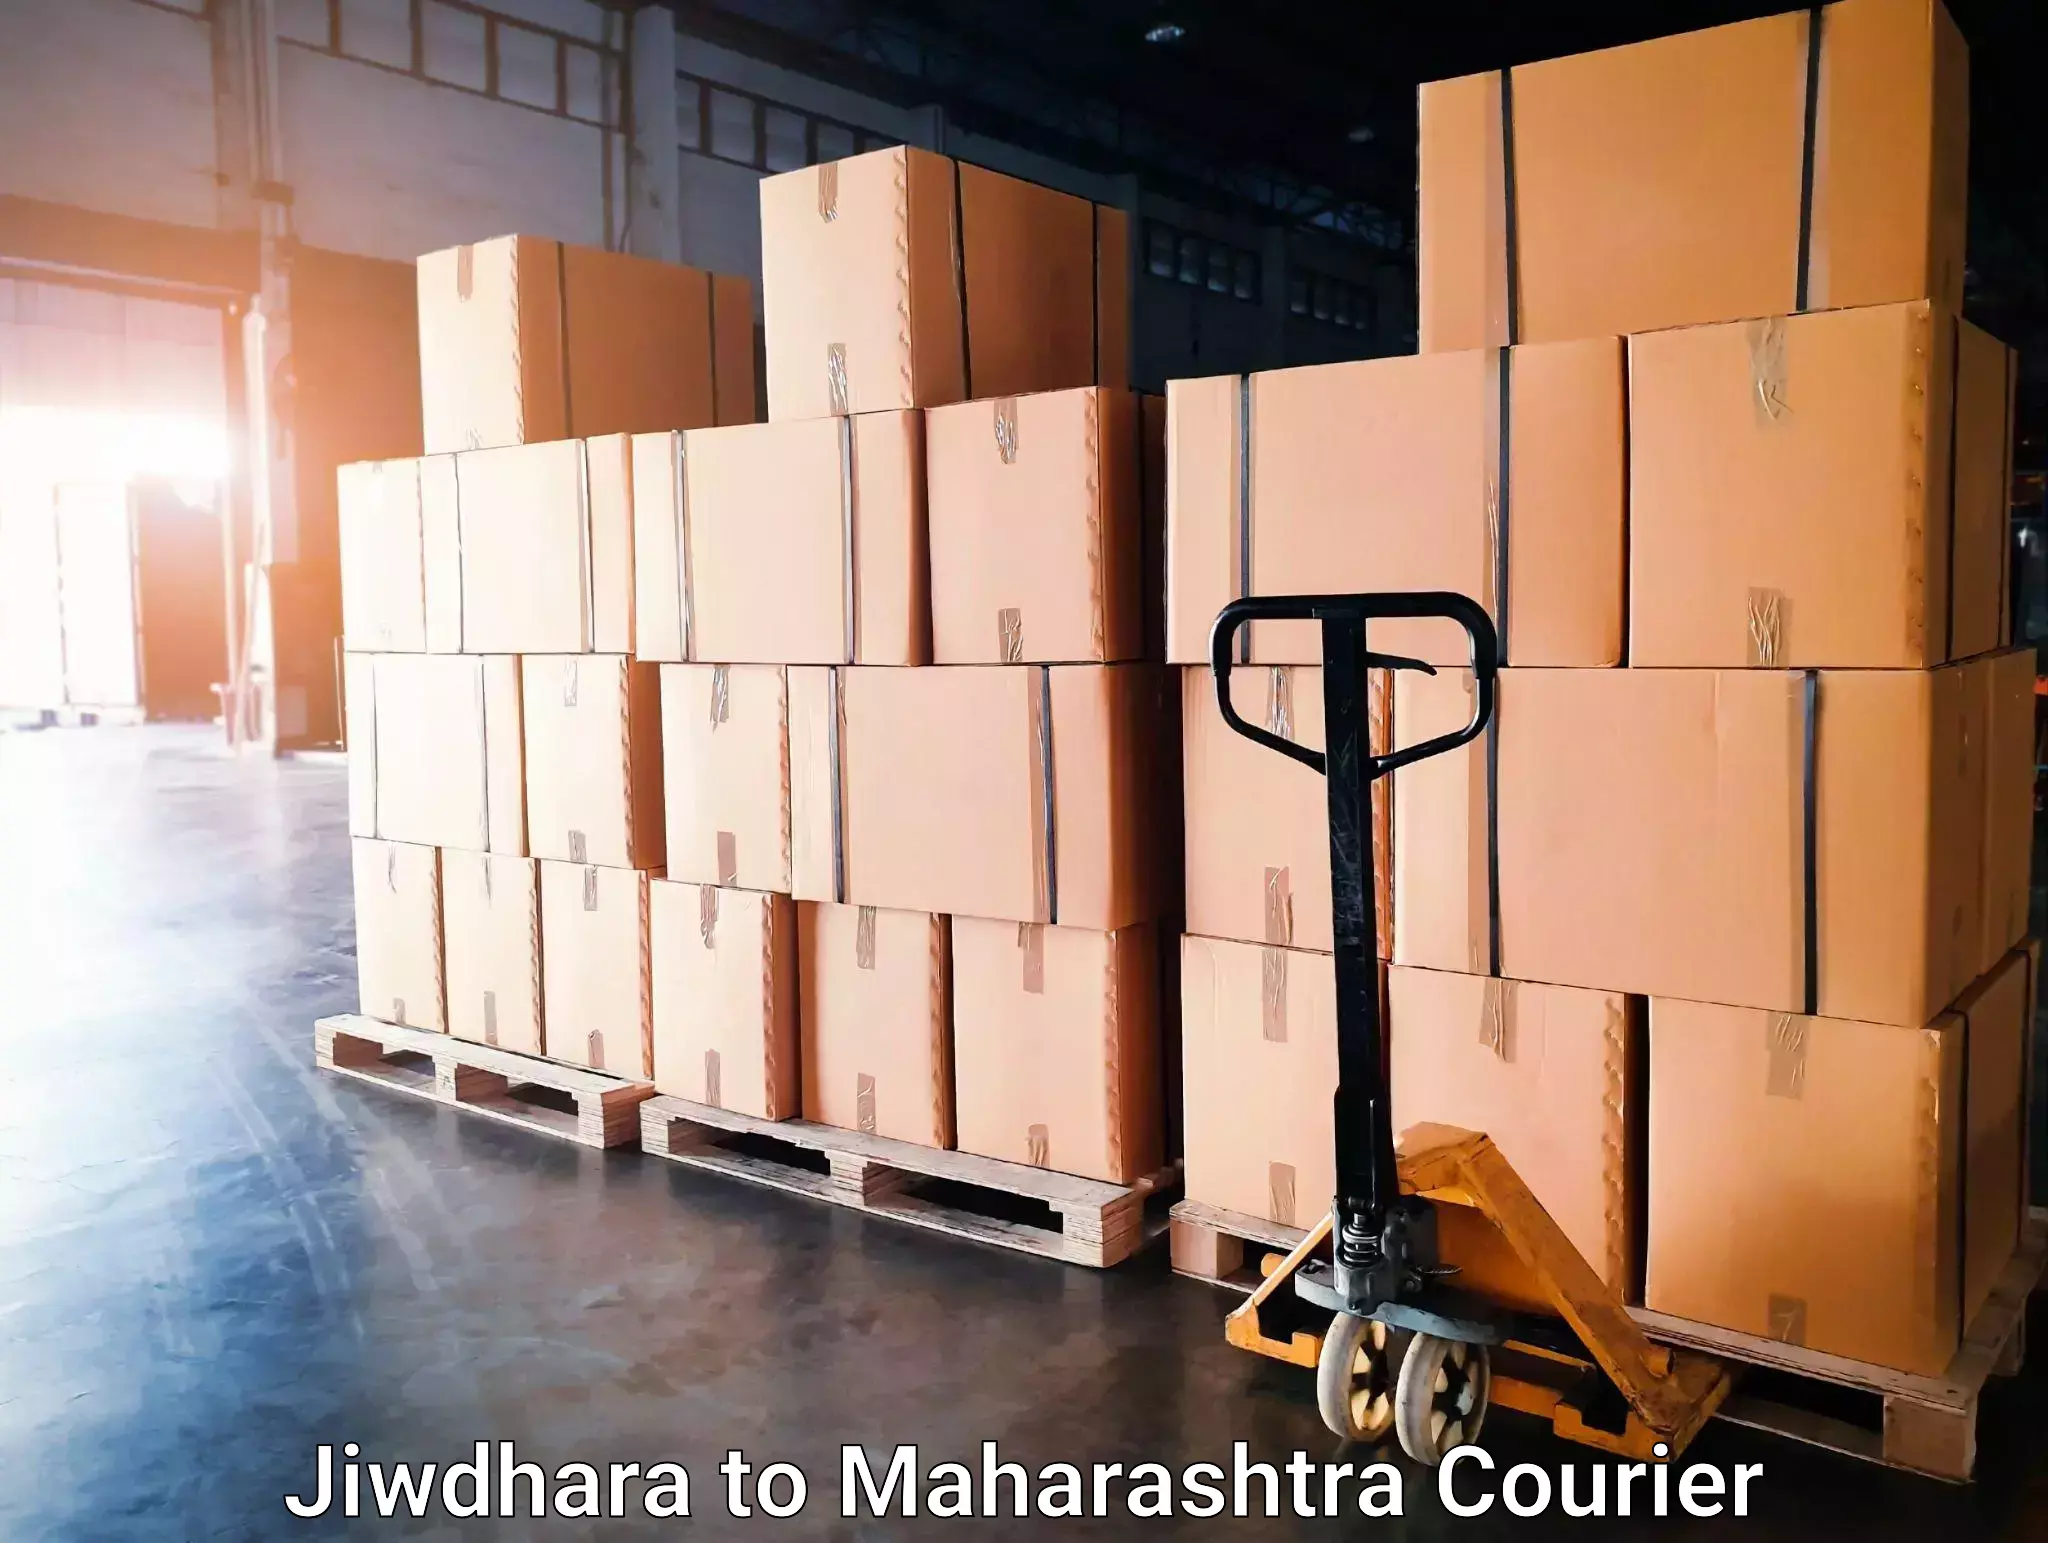 Trusted moving company Jiwdhara to Maharashtra